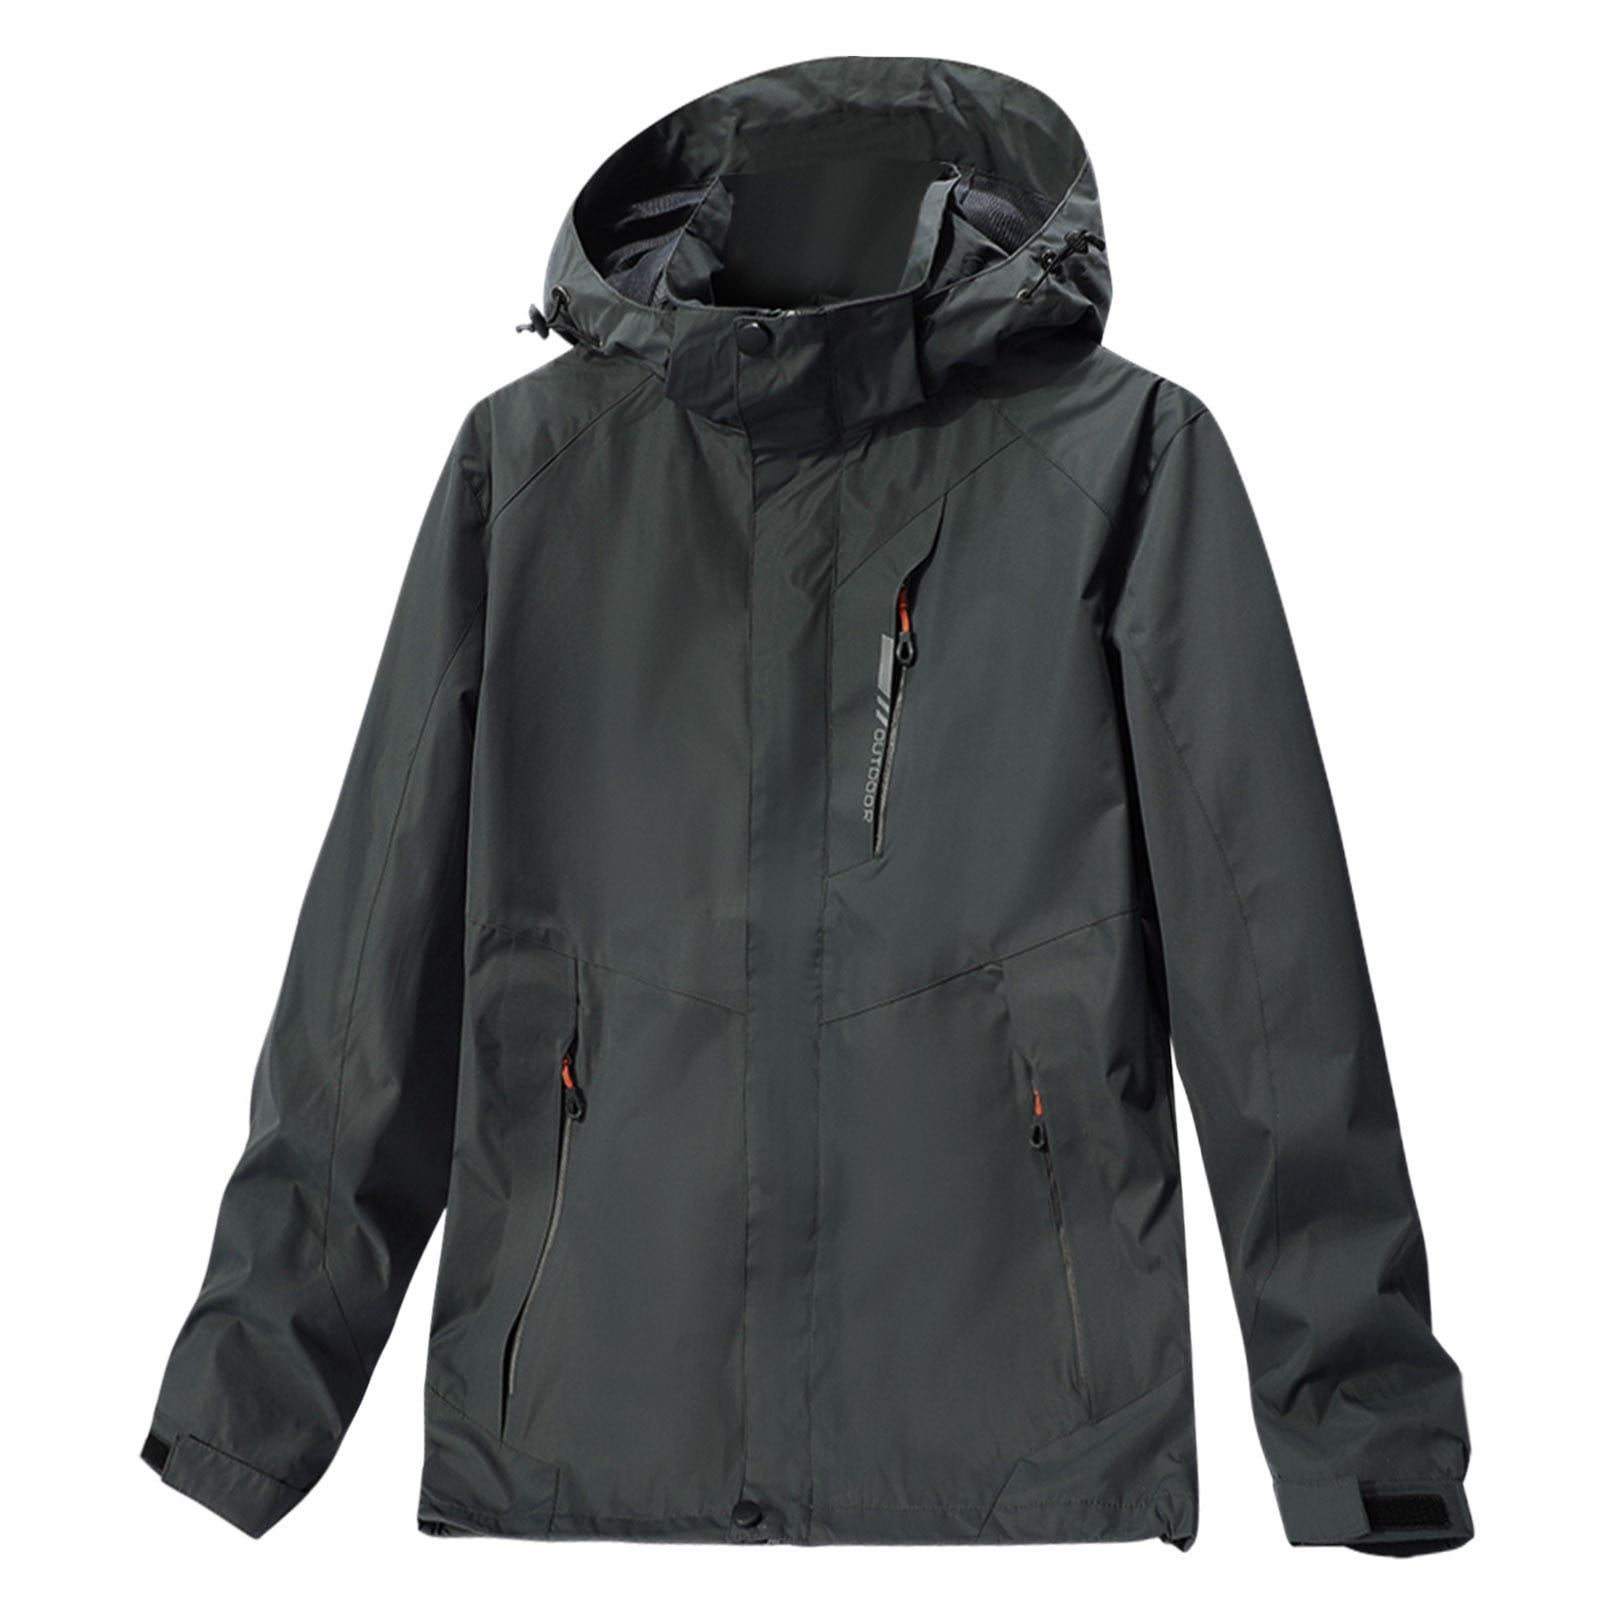 LEEy-world Flannel Jackets for Men Men's Ski Jacket Warm Winter Waterproof  Windbreaker Hooded Raincoat Snowboarding Jackets Grey,3XL